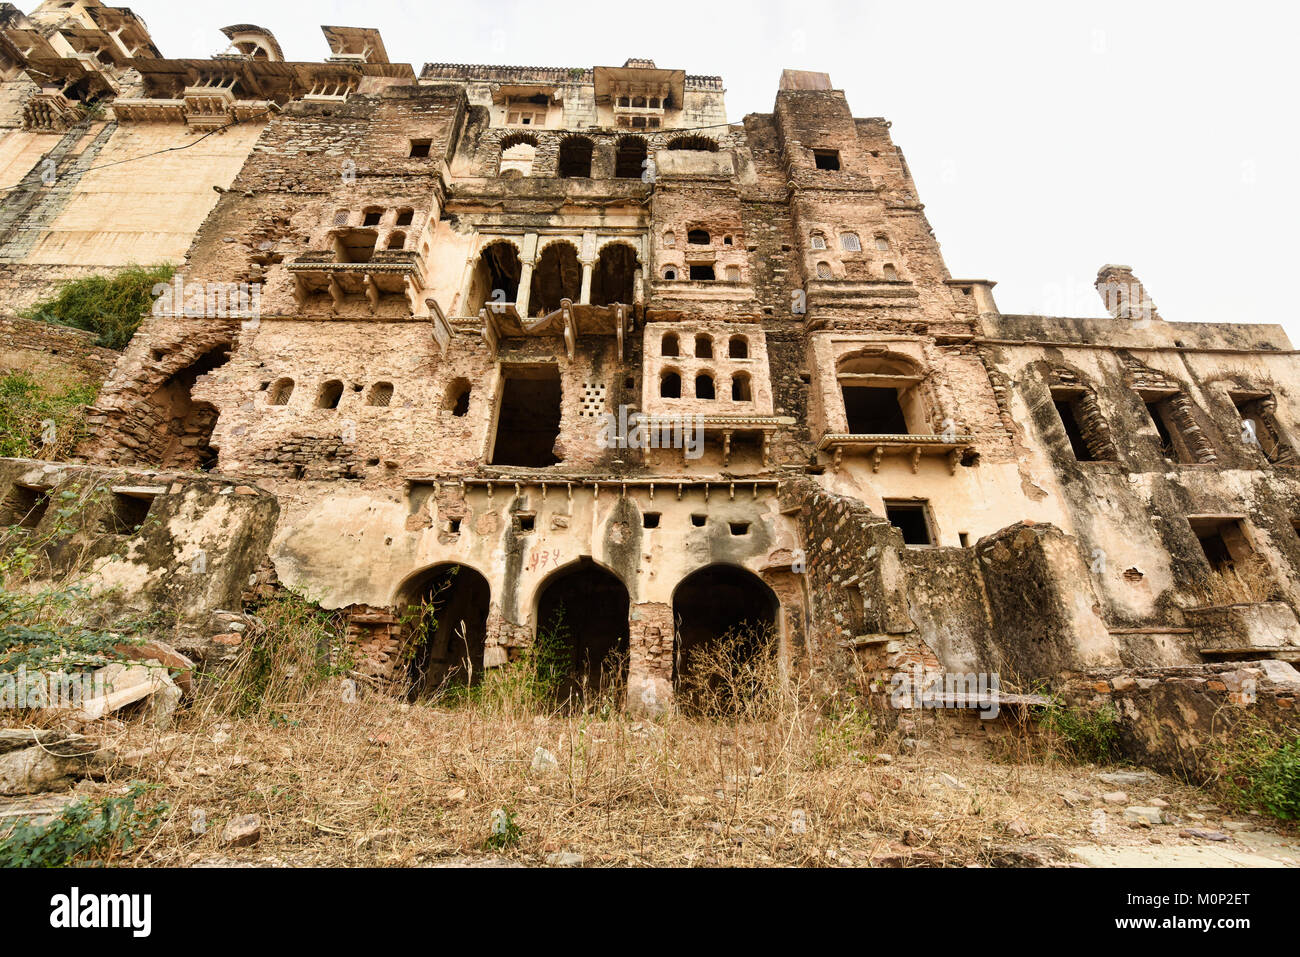 The atmospheric ruined Bundi Palace, Rajasthan, India Stock Photo